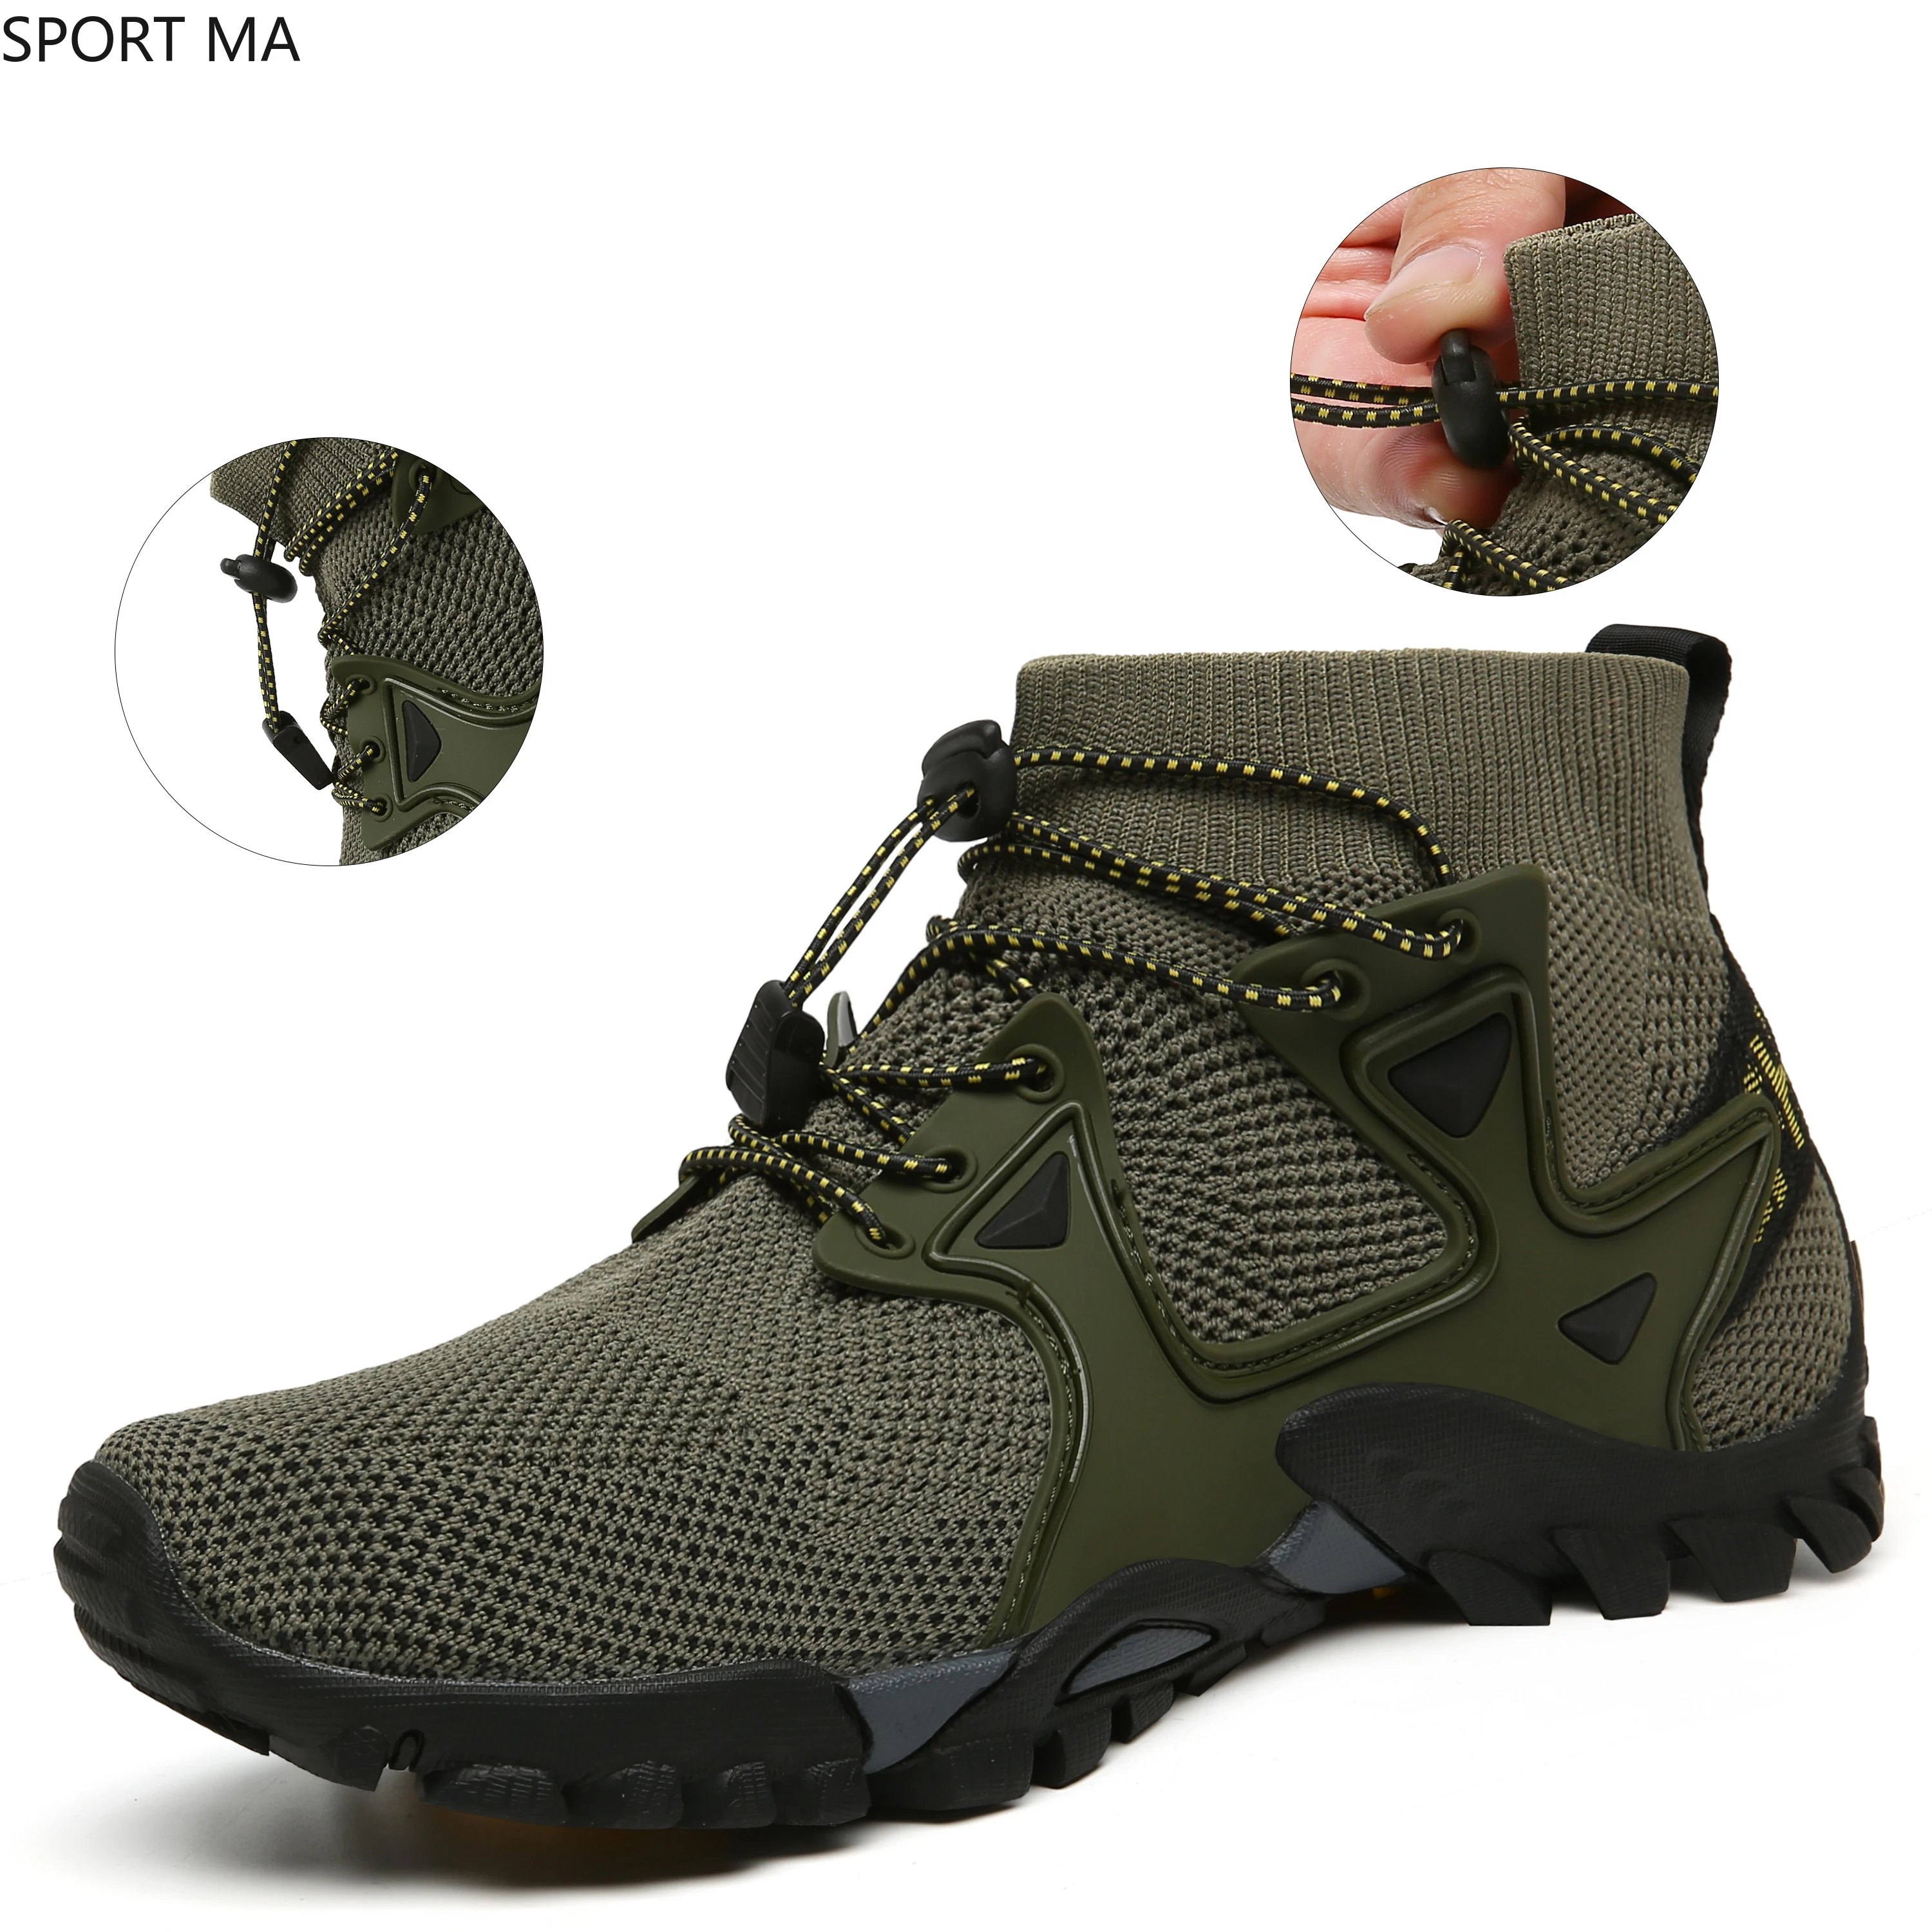 

Мужские кроссовки Air Mesh для активного отдыха, горной, пустыни, восхождения, обувь для мужчин и женщин, ботильоны для походов, размера плюс 46, о...